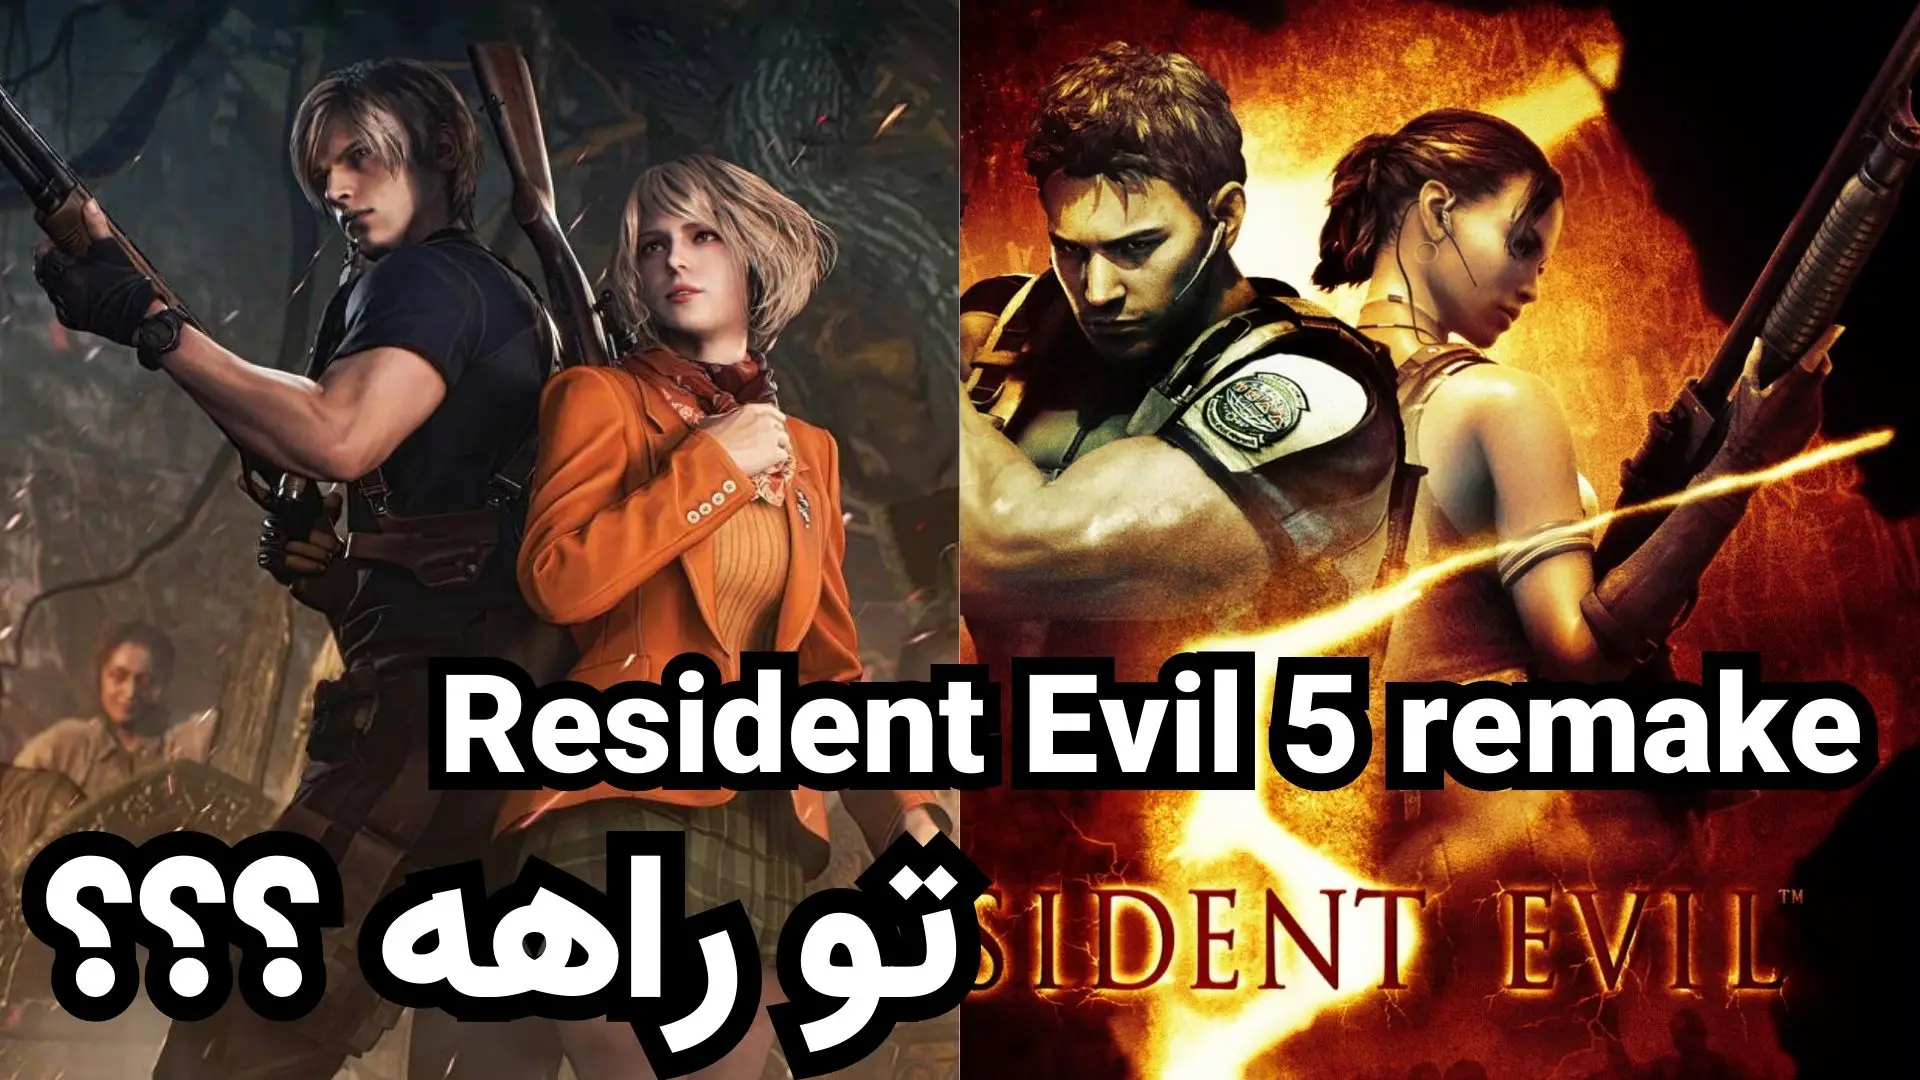 ظاهراً Resident Evil 4 remake به Resident Evil 5 remake اشاره می کند